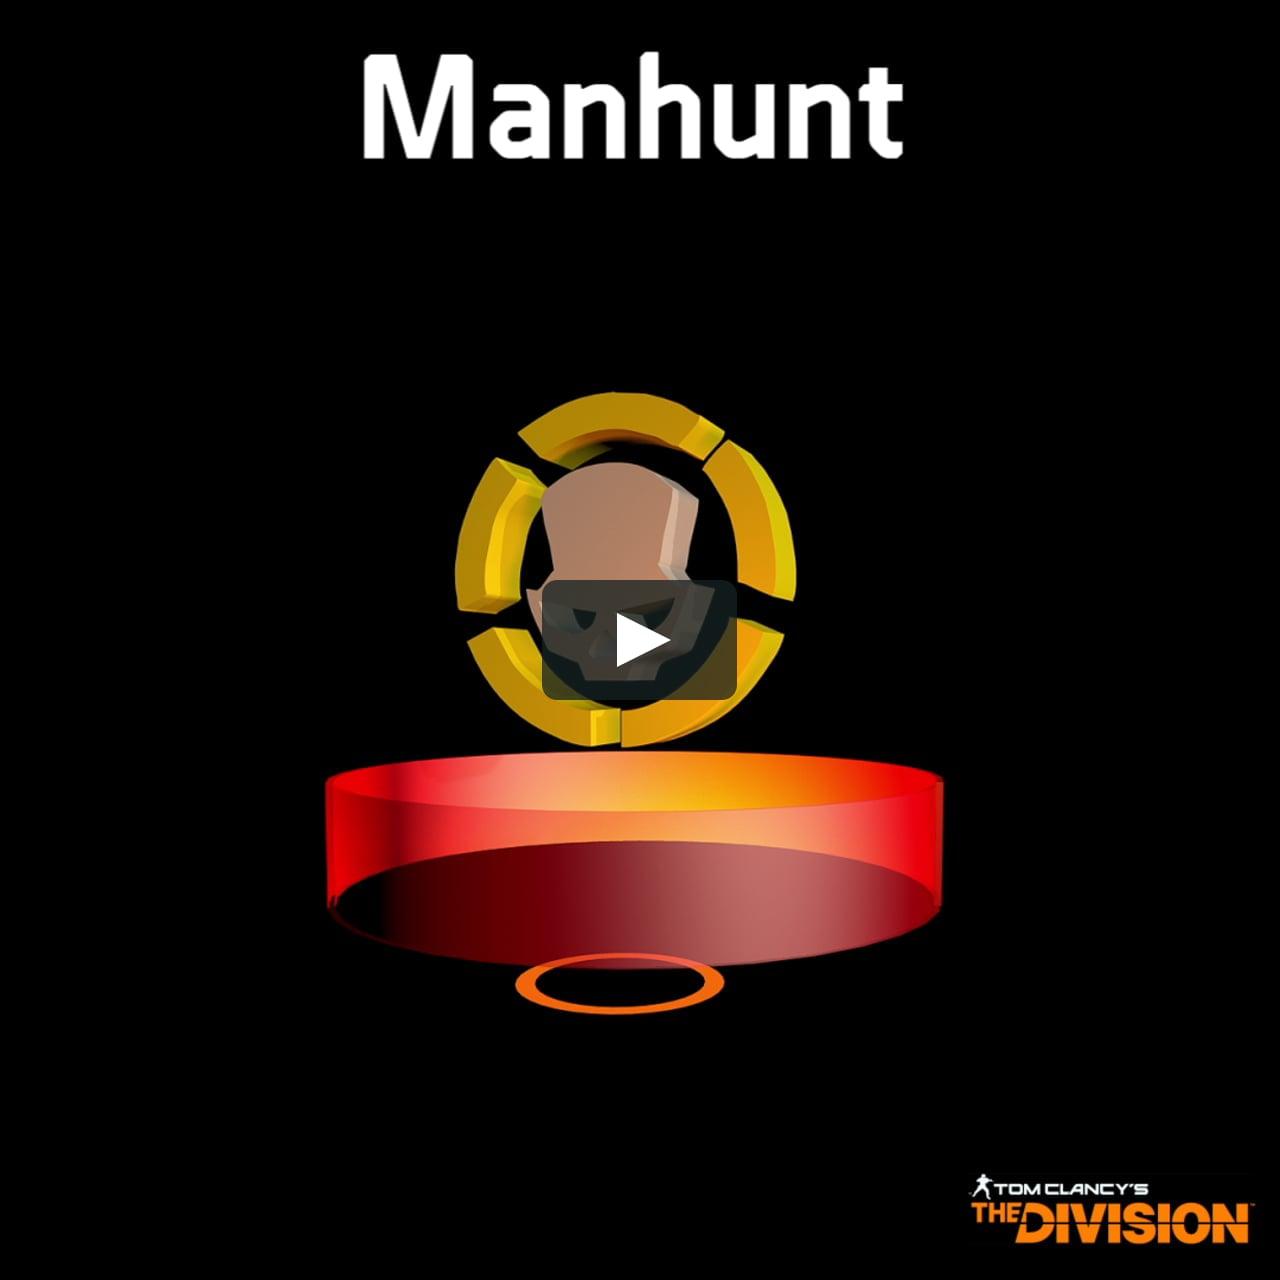 The Division MANHUNT Logo - The Division Symbol. on Vimeo